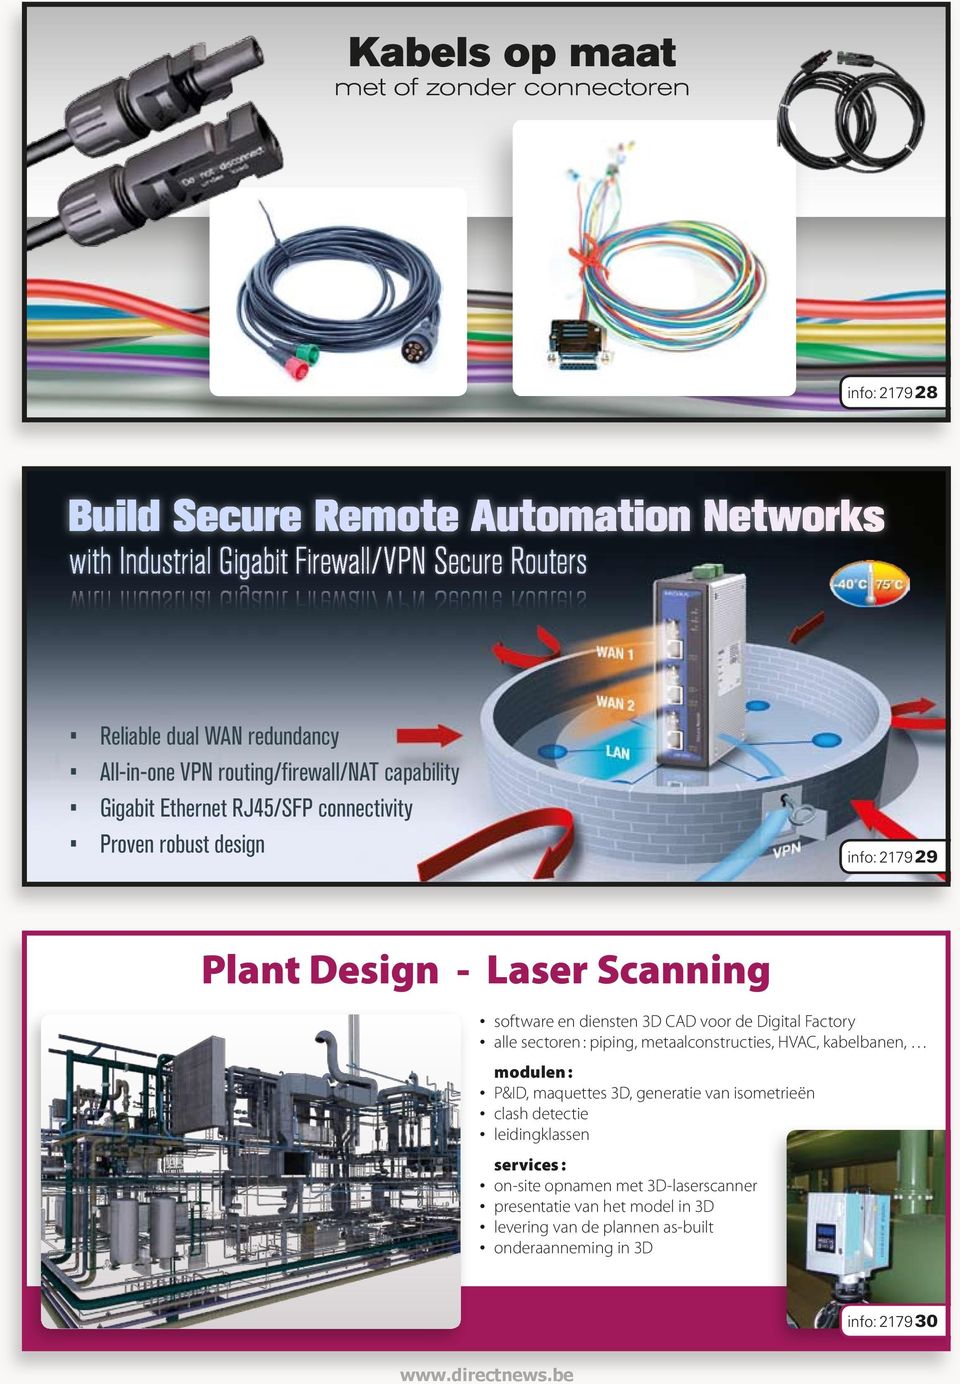 Plant Design - Laser Scanning software en diensten 3D CAD voor de Digital Factory alle sectoren : piping, metaalconstructies, HVAC, kabelbanen, modulen : P&ID, maquettes 3D,